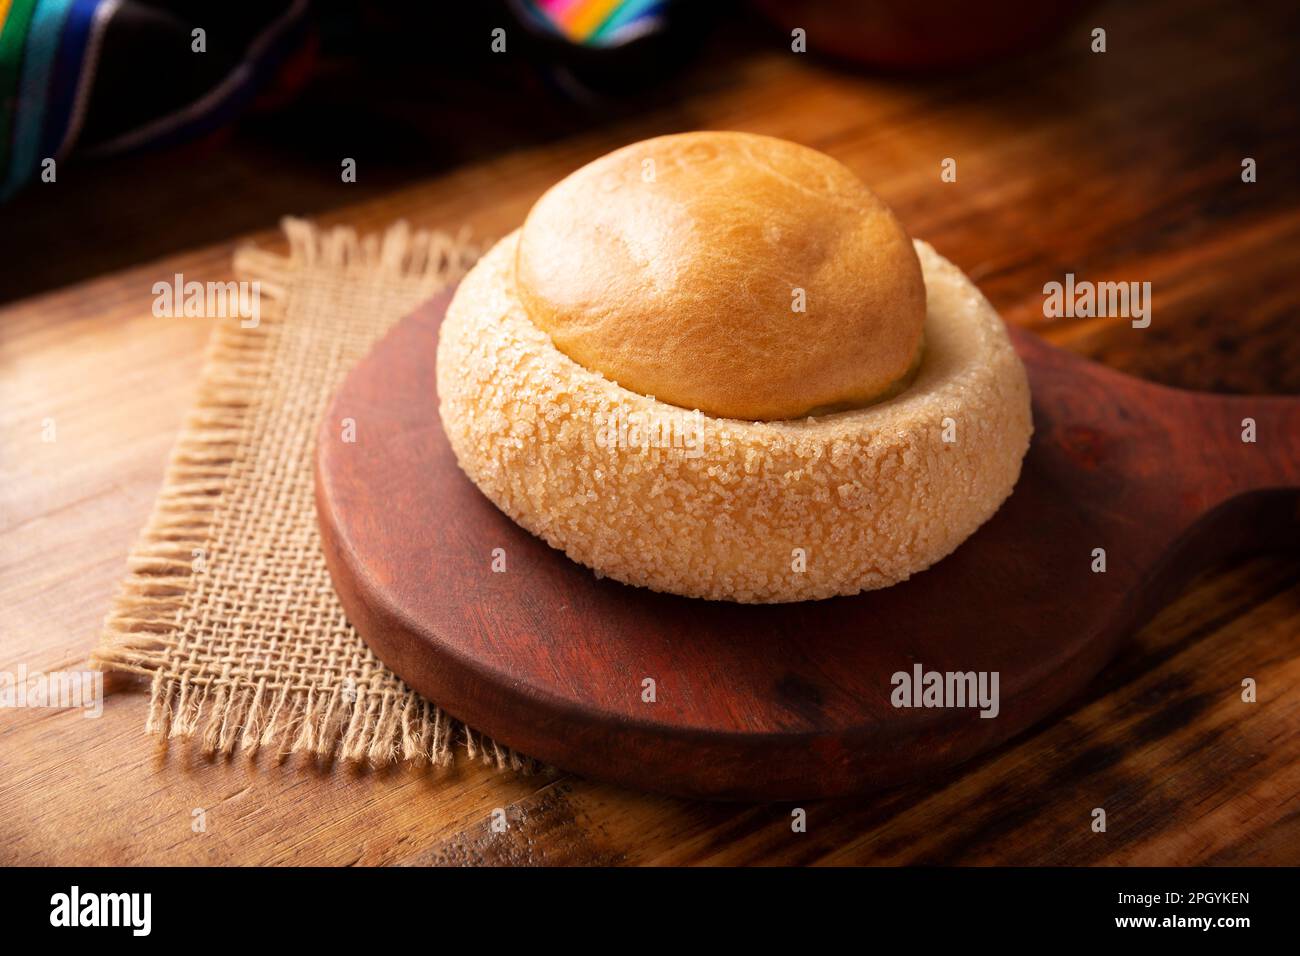 Ojo de Buey. También conocido como Ojo de Pancha, es uno de los panes  dulces tradicionales mexicanos, que consisten en un anillo de pan escamoso  relleno con un panecillo de color naranja